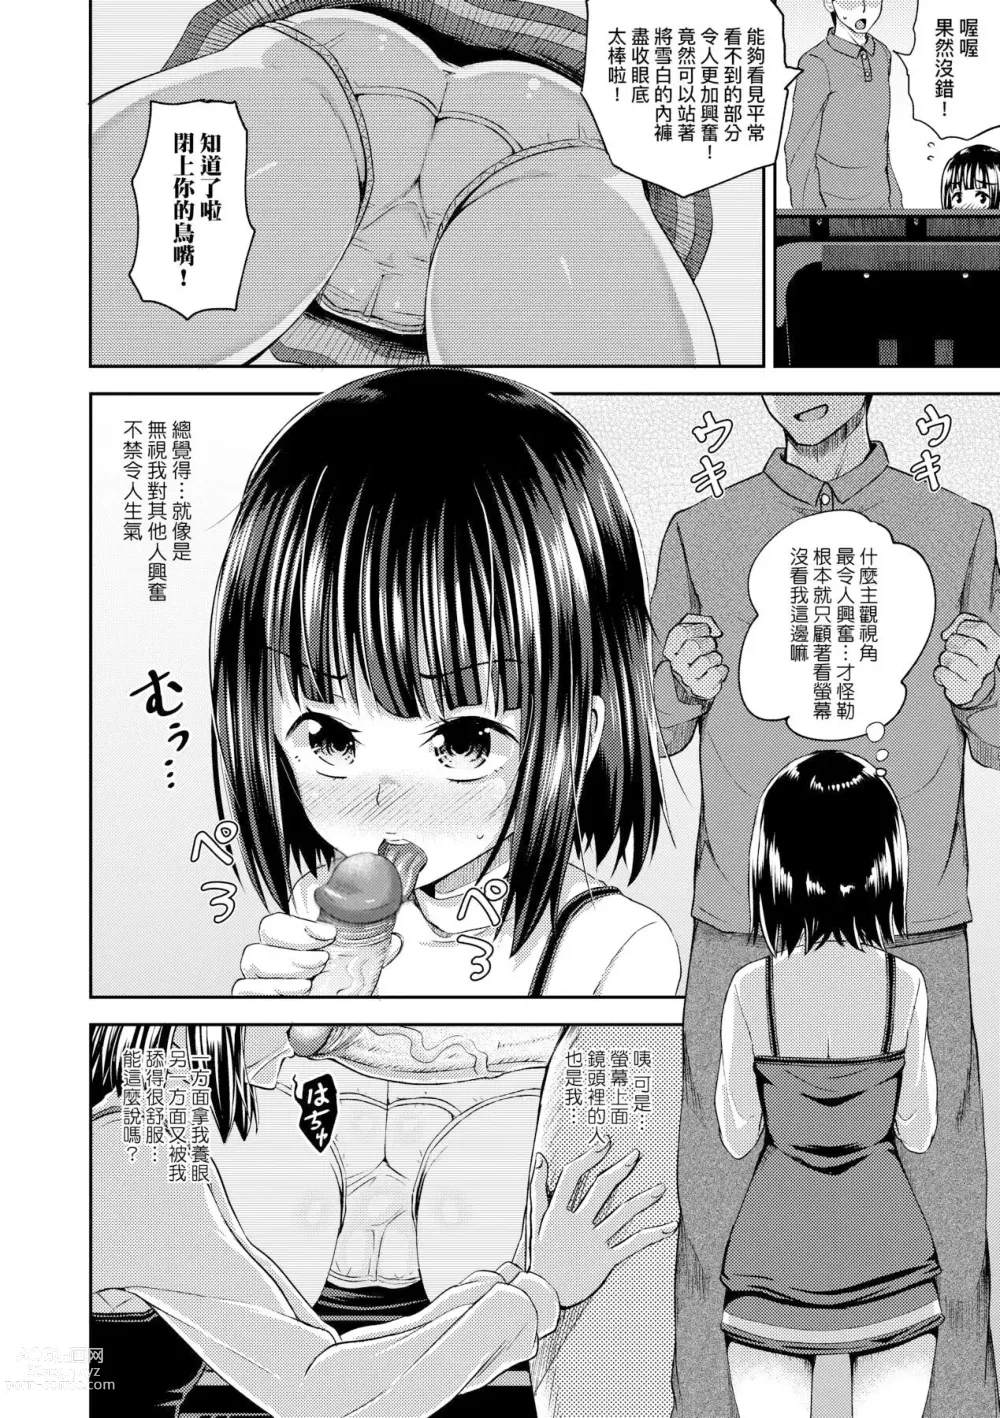 Page 188 of manga 心生遐想催眠暗示APP♡妳與我與她 (decensored)